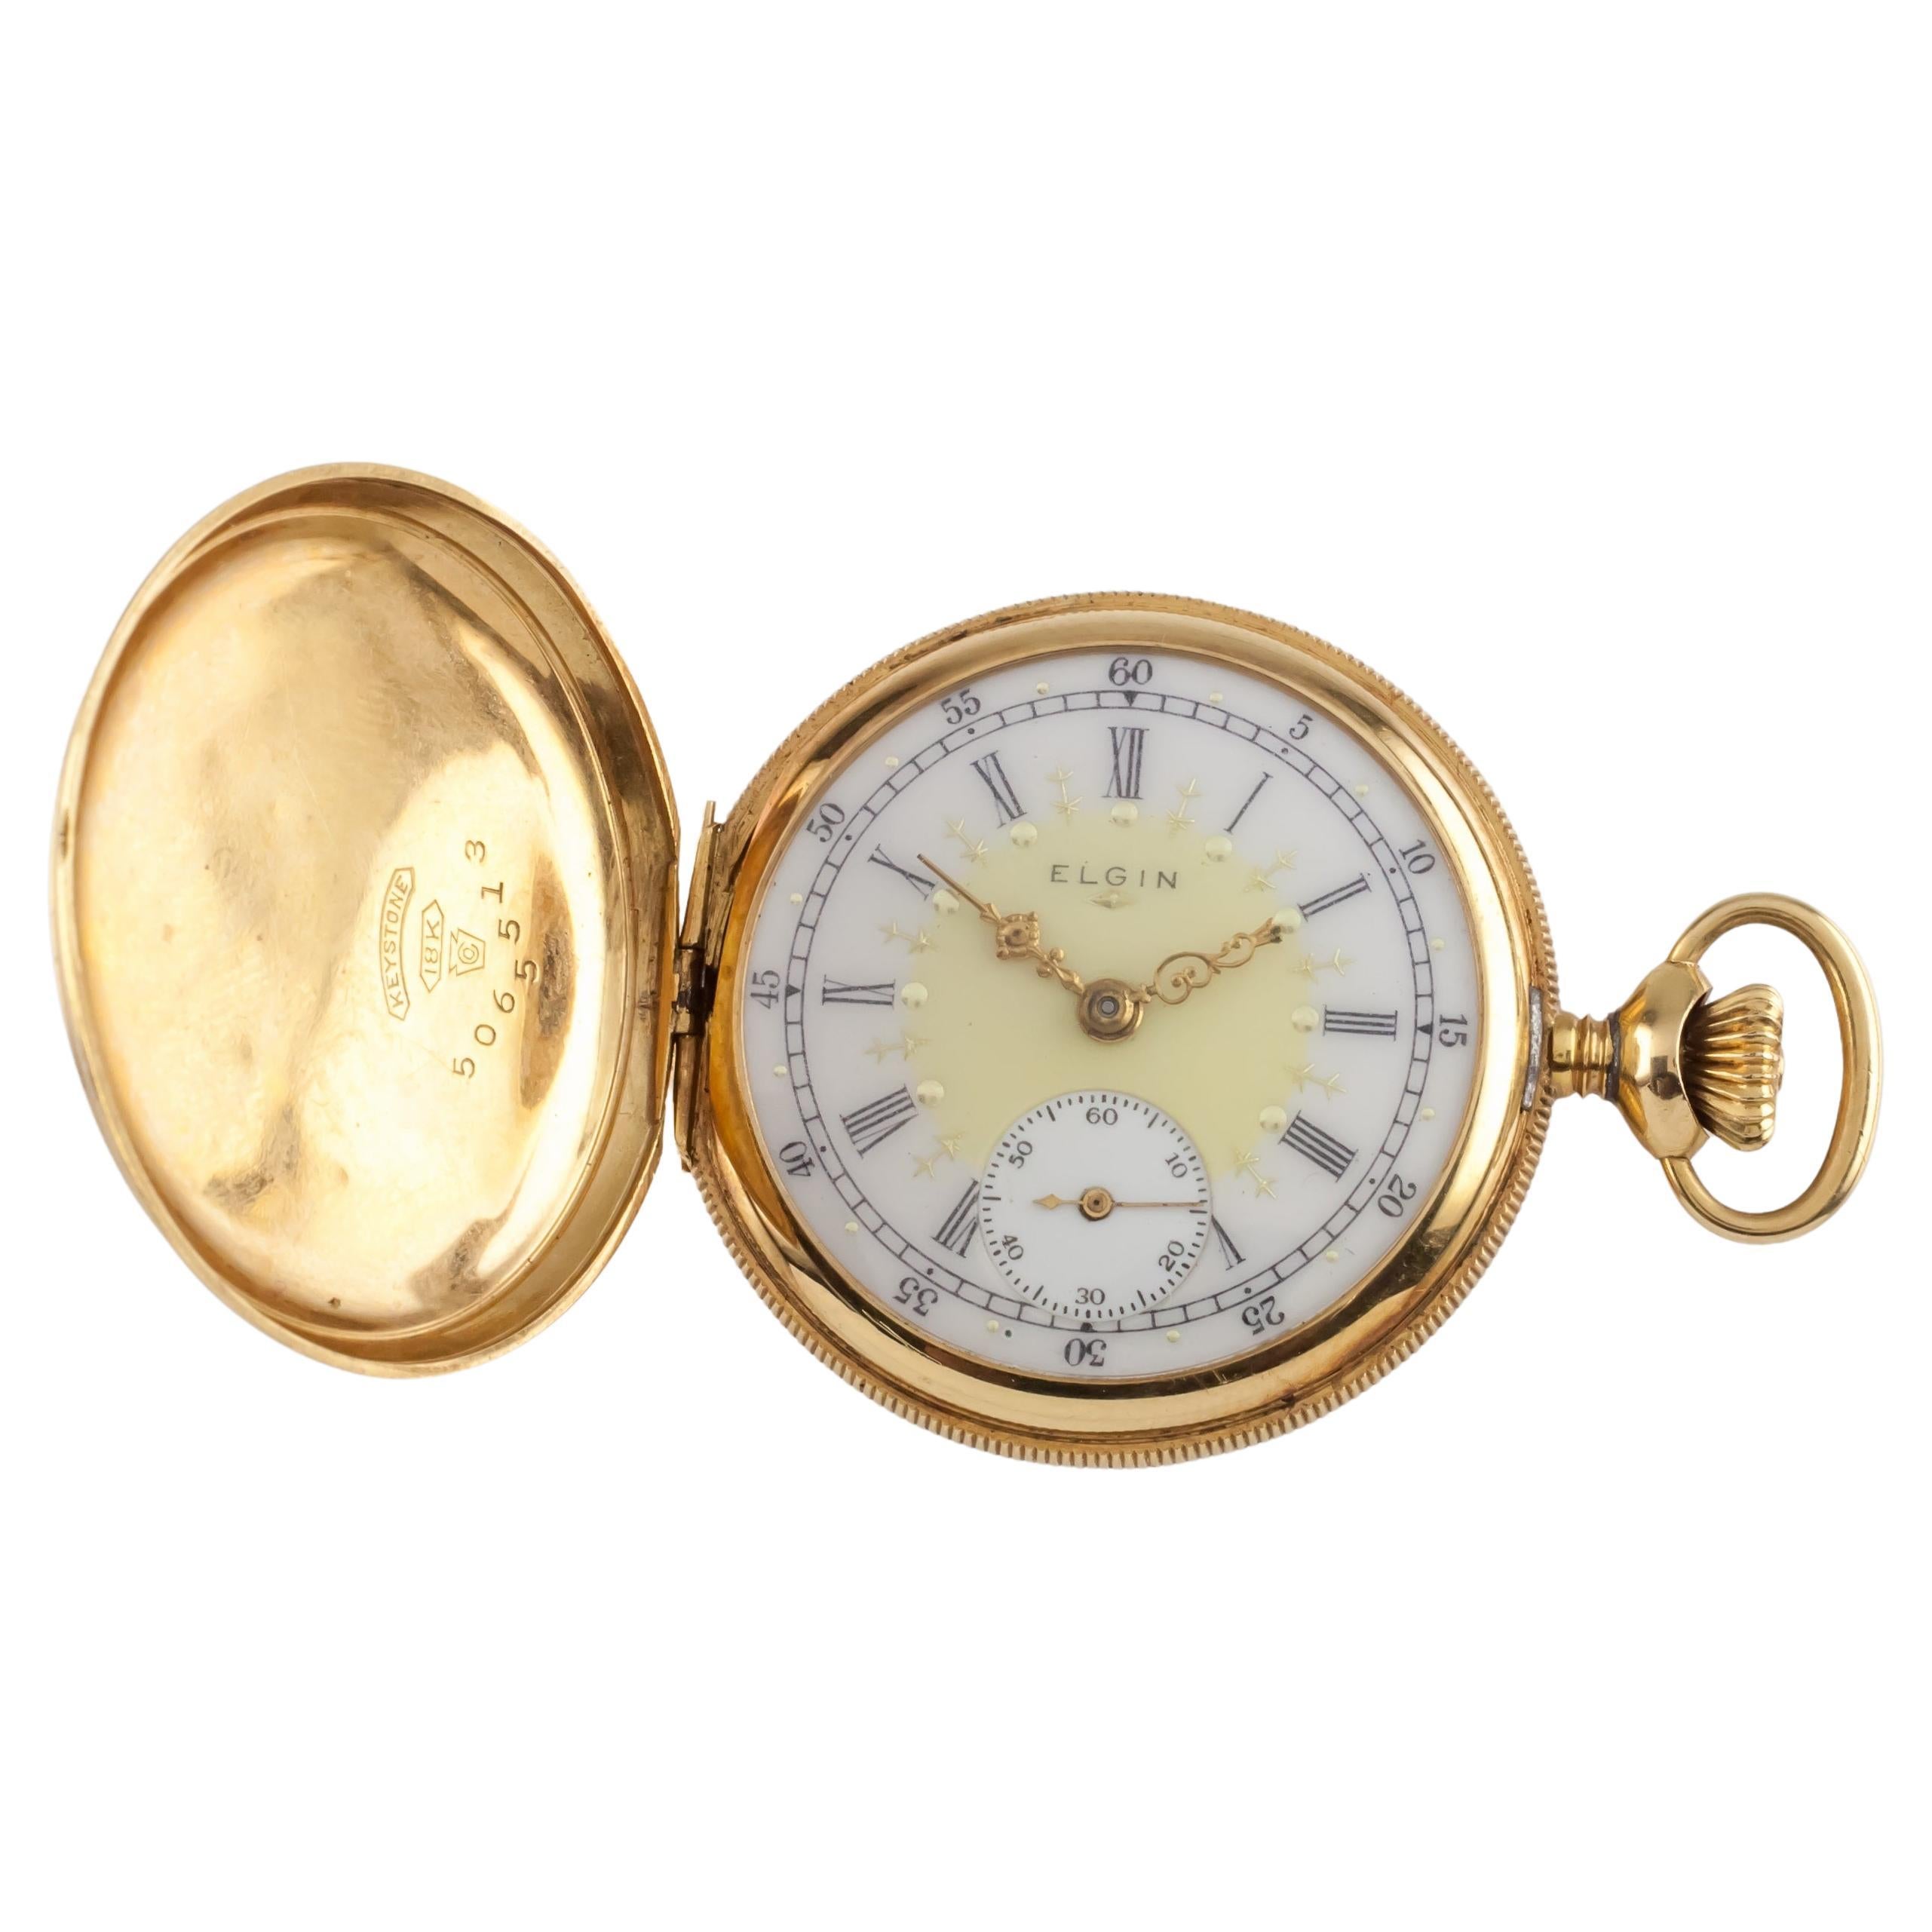 Elgin, petite montre de poche chasseur en or jaune 18 carats, taille 0S